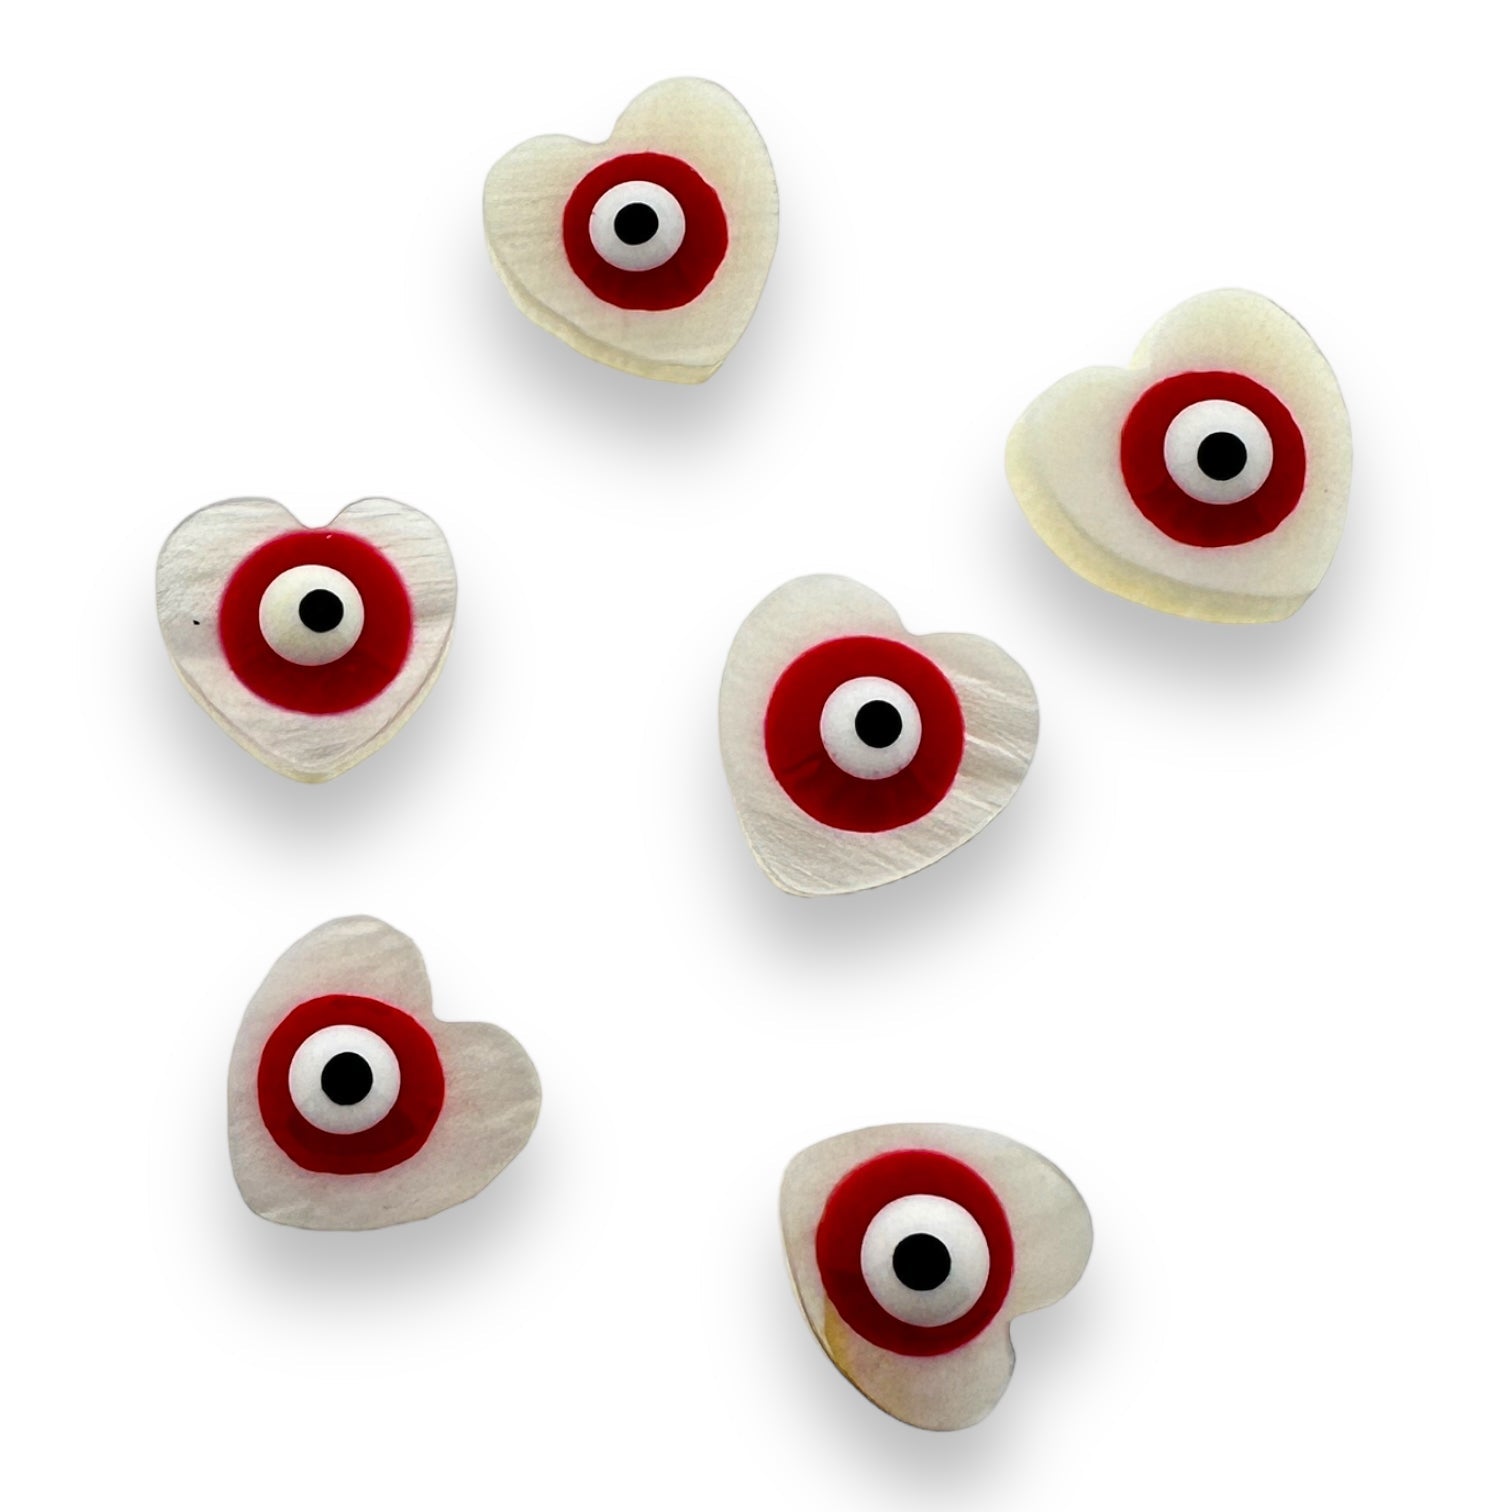 Zoetwaterschelp kraal hartje evil eye rood 10mm-Kralen-Kraaltjes van Renate